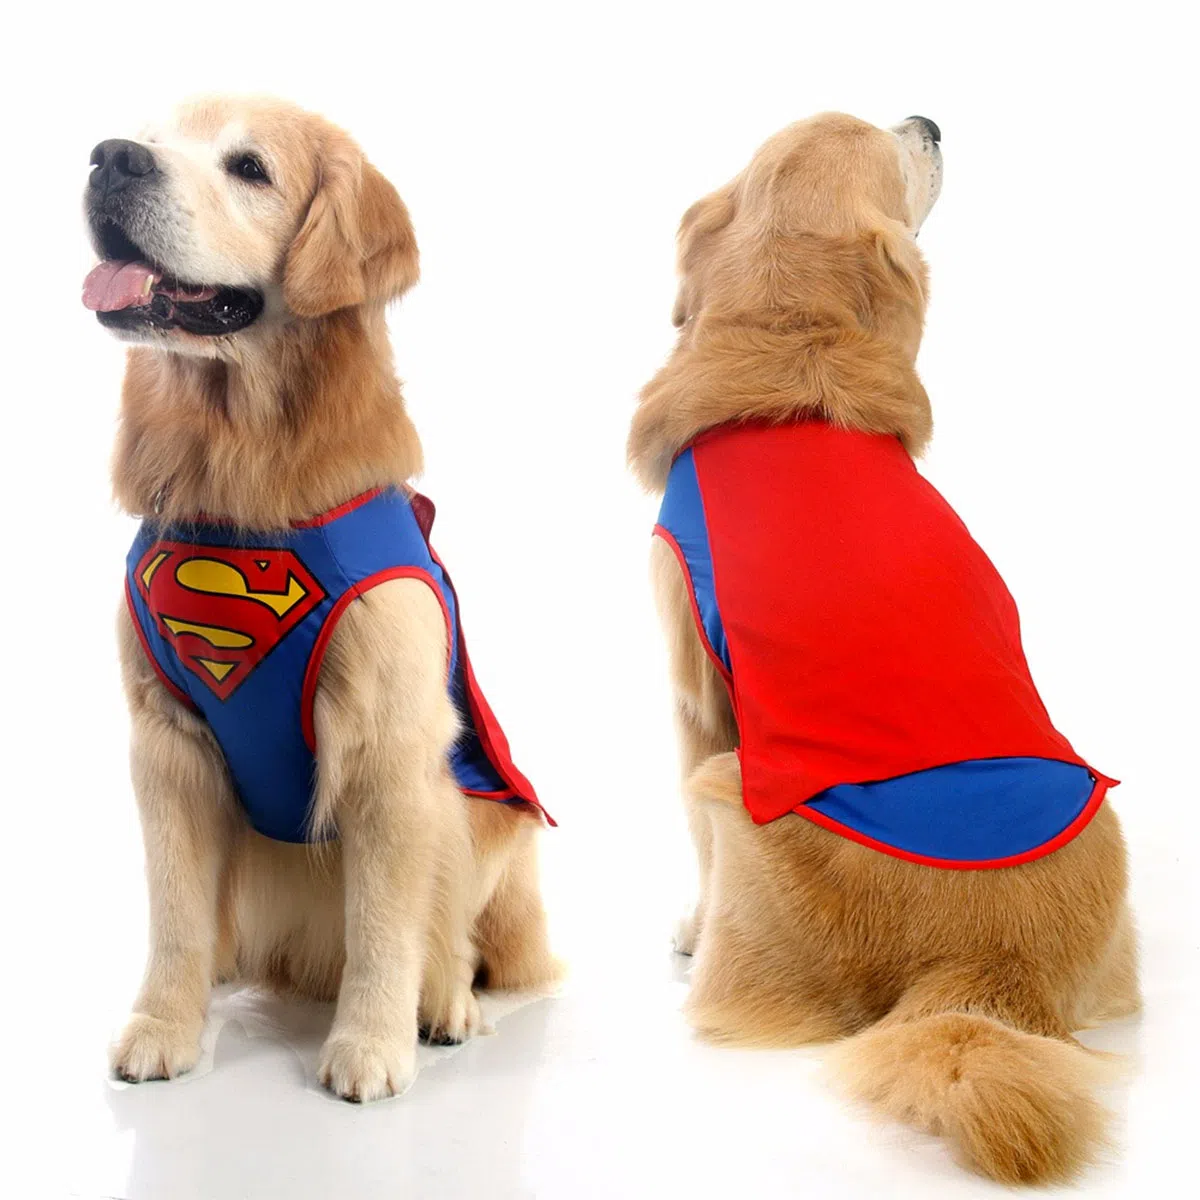 Cachorro Golden Retriever com roupa do super homem.